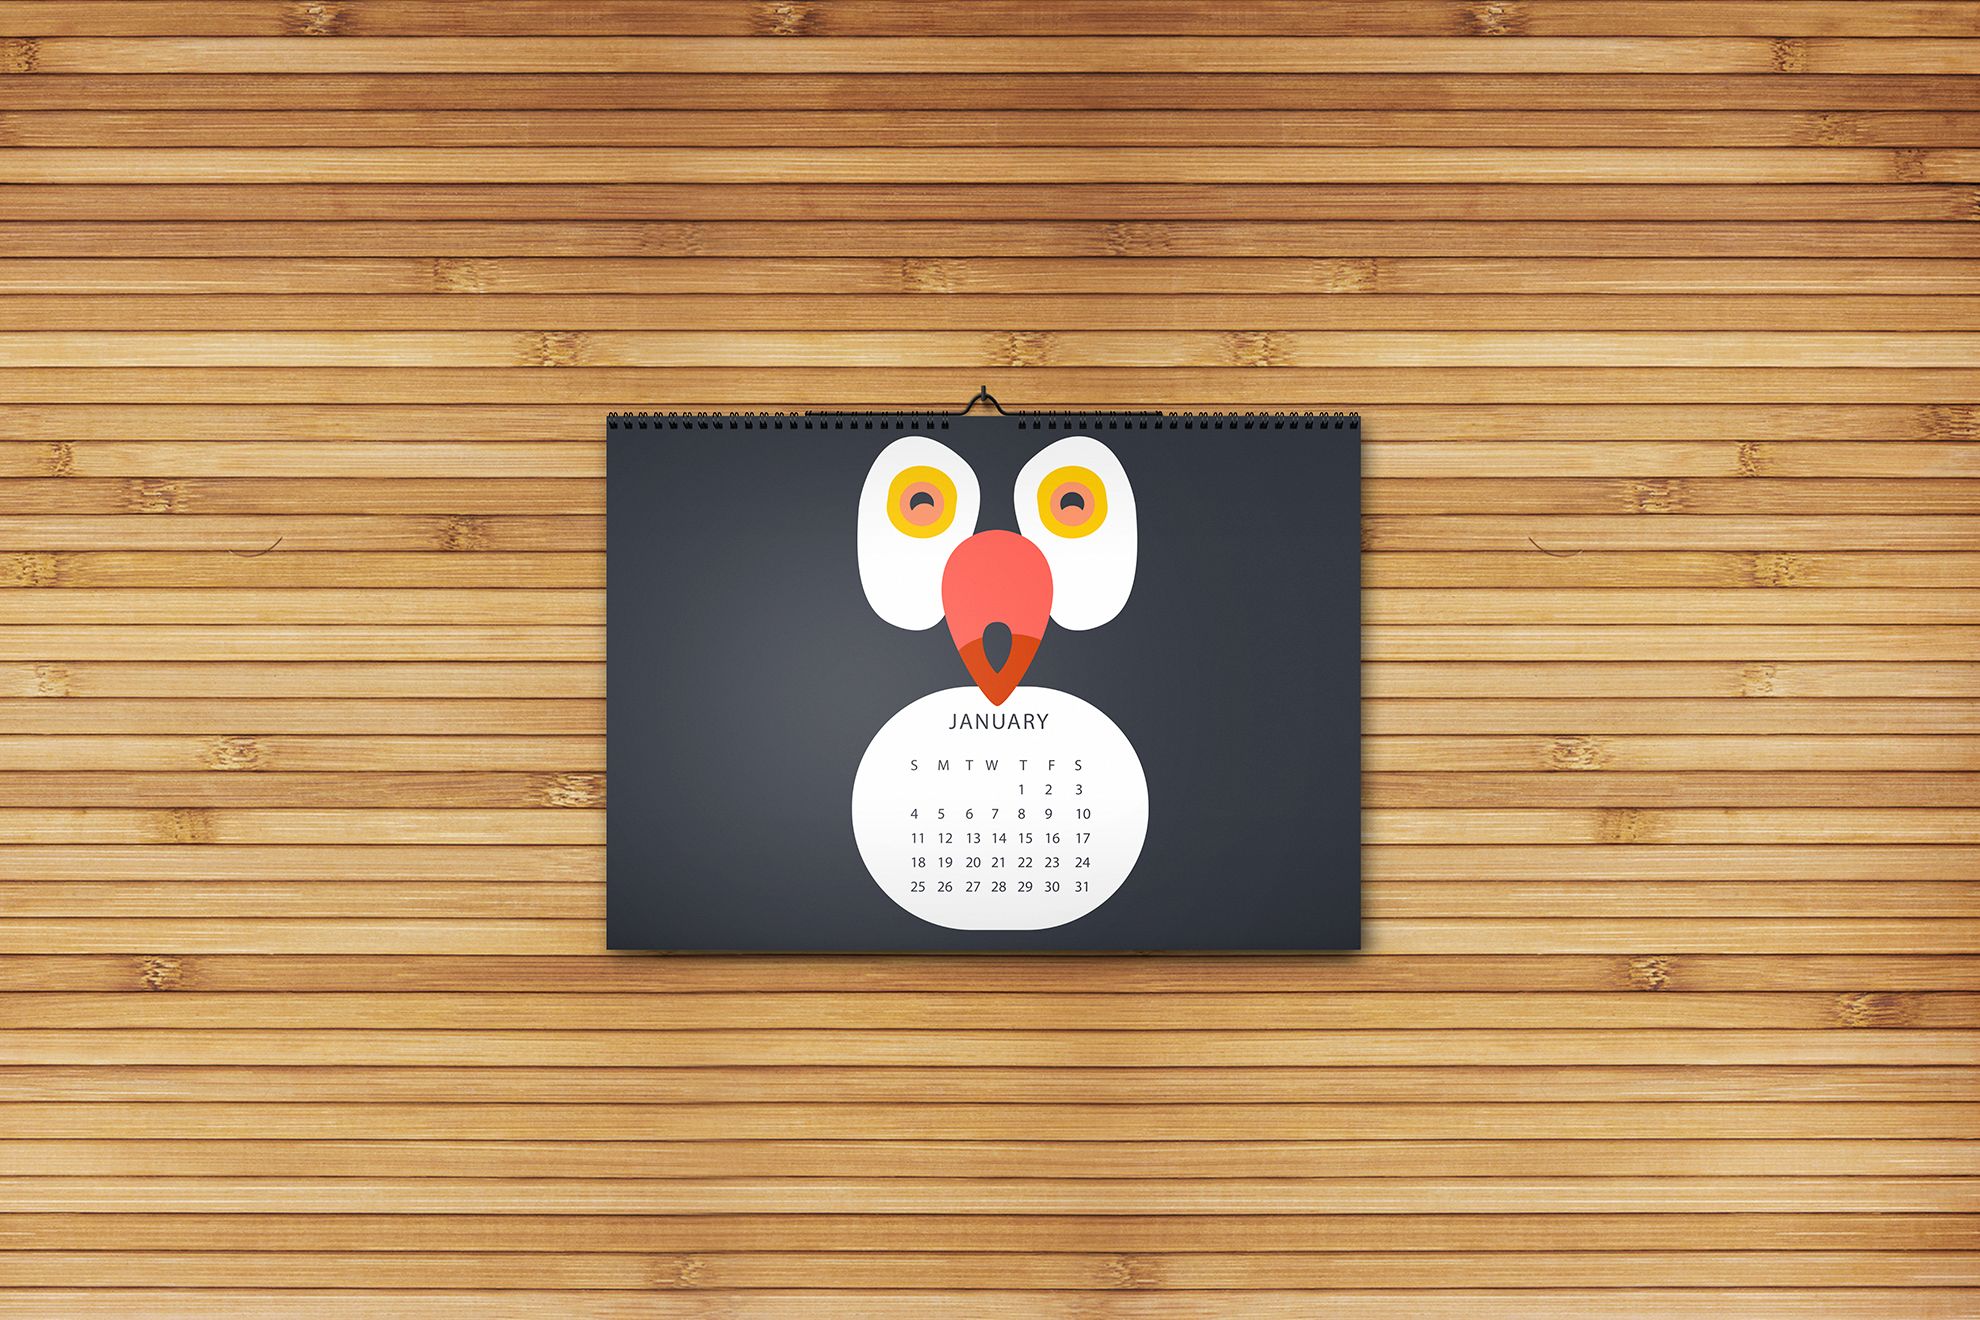 Stampa online muro legno: Configura e ordina online i tuoi calendari da parete su Sprint24. Un pratico organizer per far ricordare ogni giorno la tua azienda ai tuoi clienti.